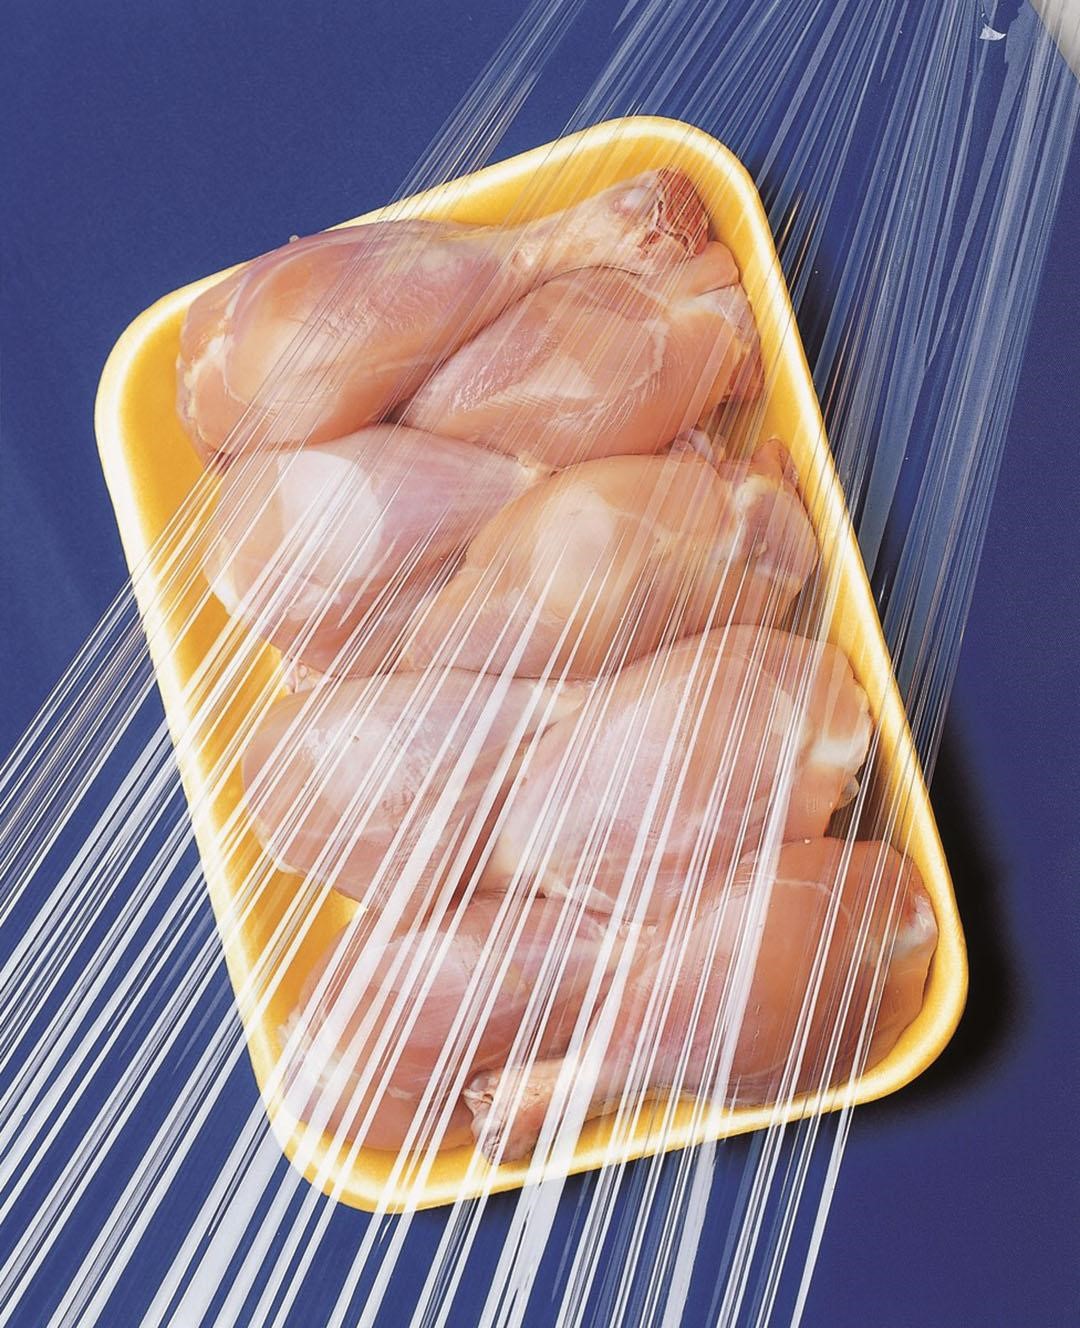 تکنیک‌های بهینه برای بسته بندی مواد غذایی با فیلم استرچ PVC